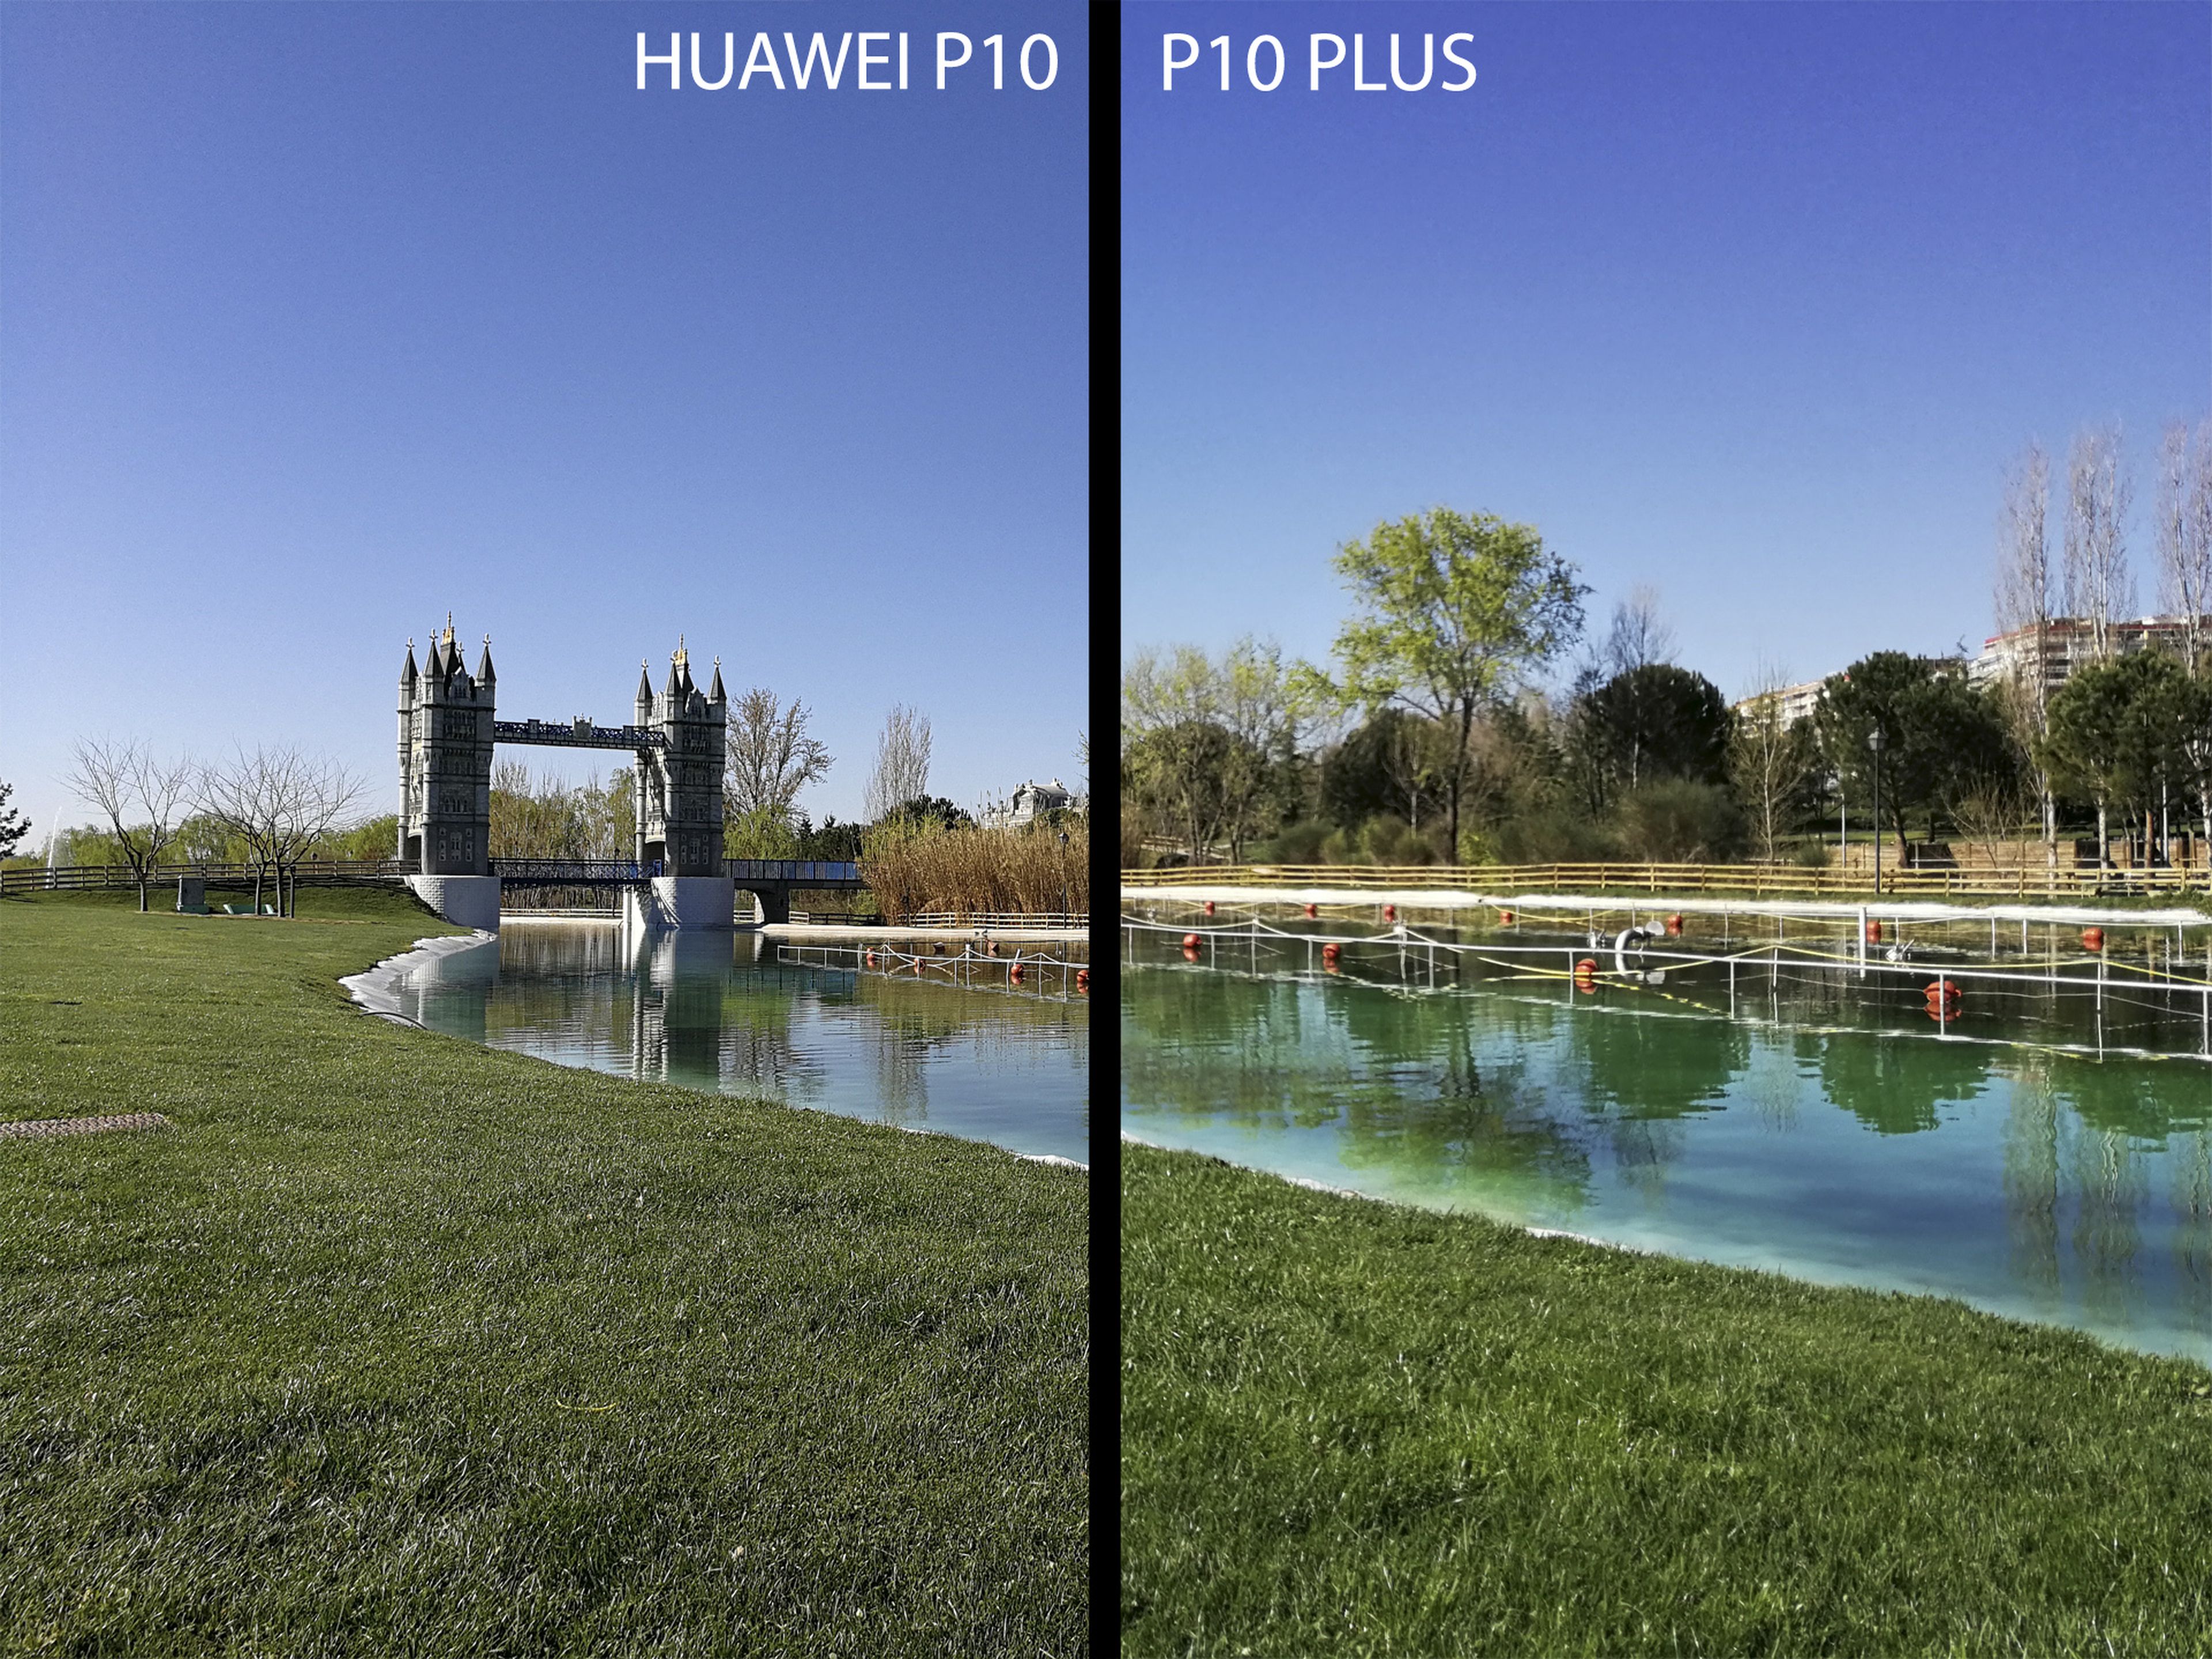 Comparativa de cámaras: Huawei P10 vs P10 Plus